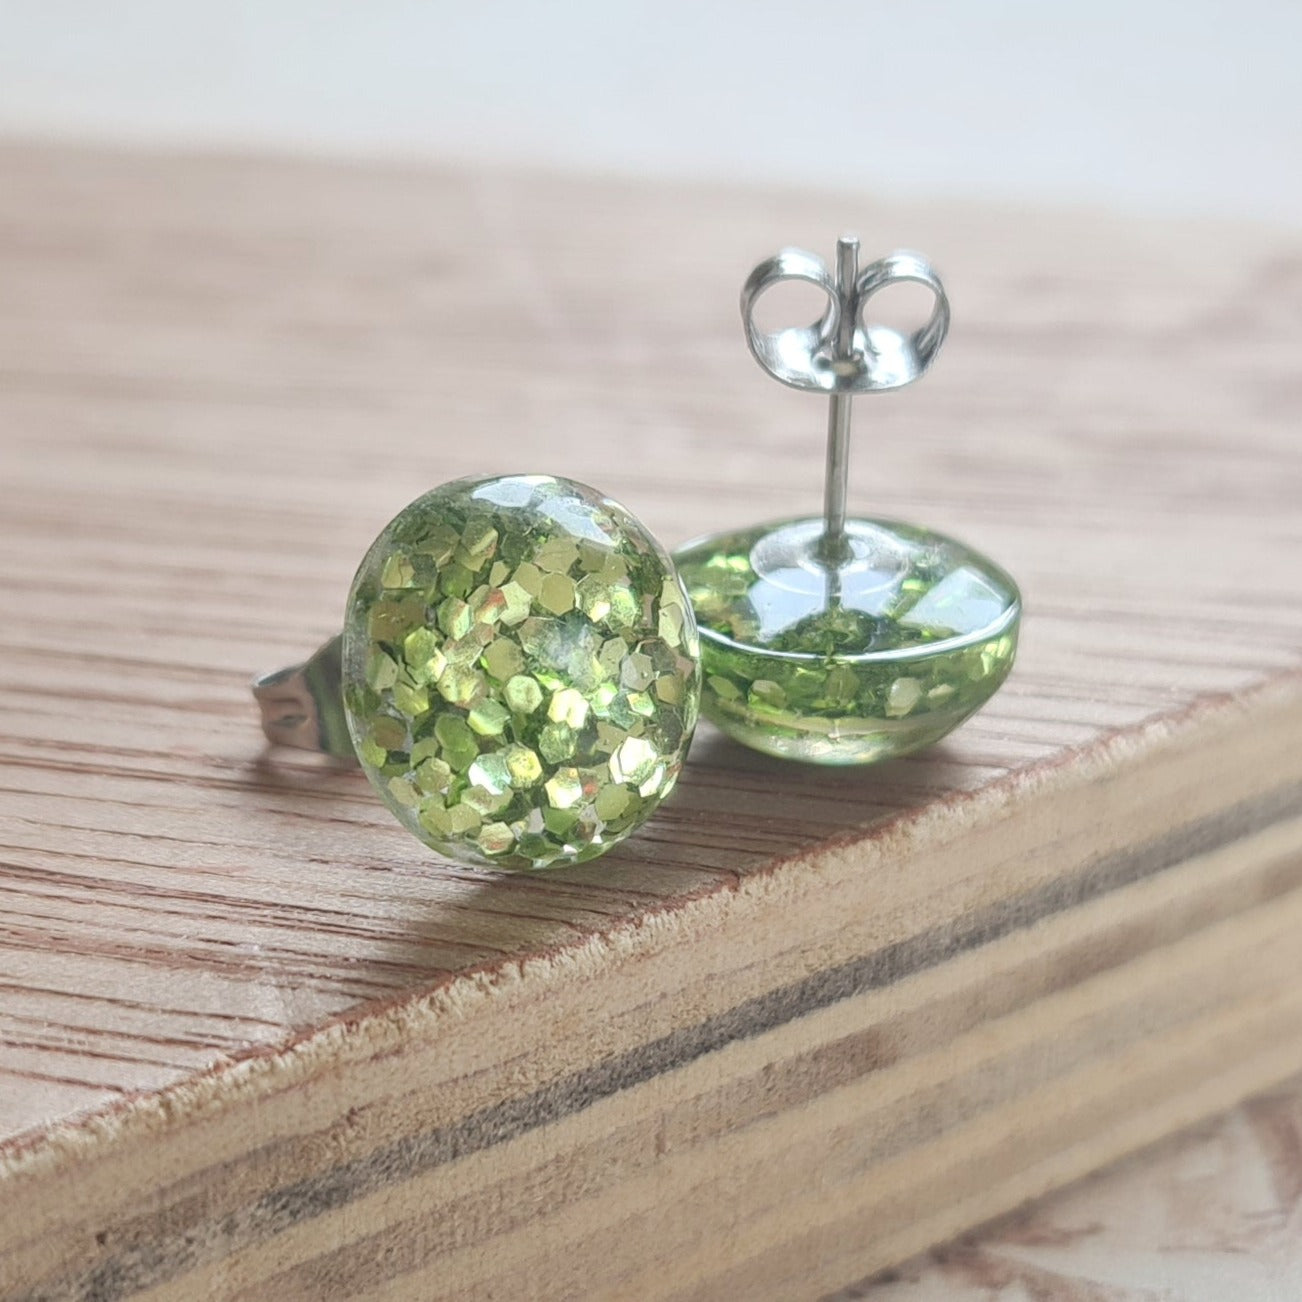 Glitter ball green - resin glitter stud earrings - the joyful rebel